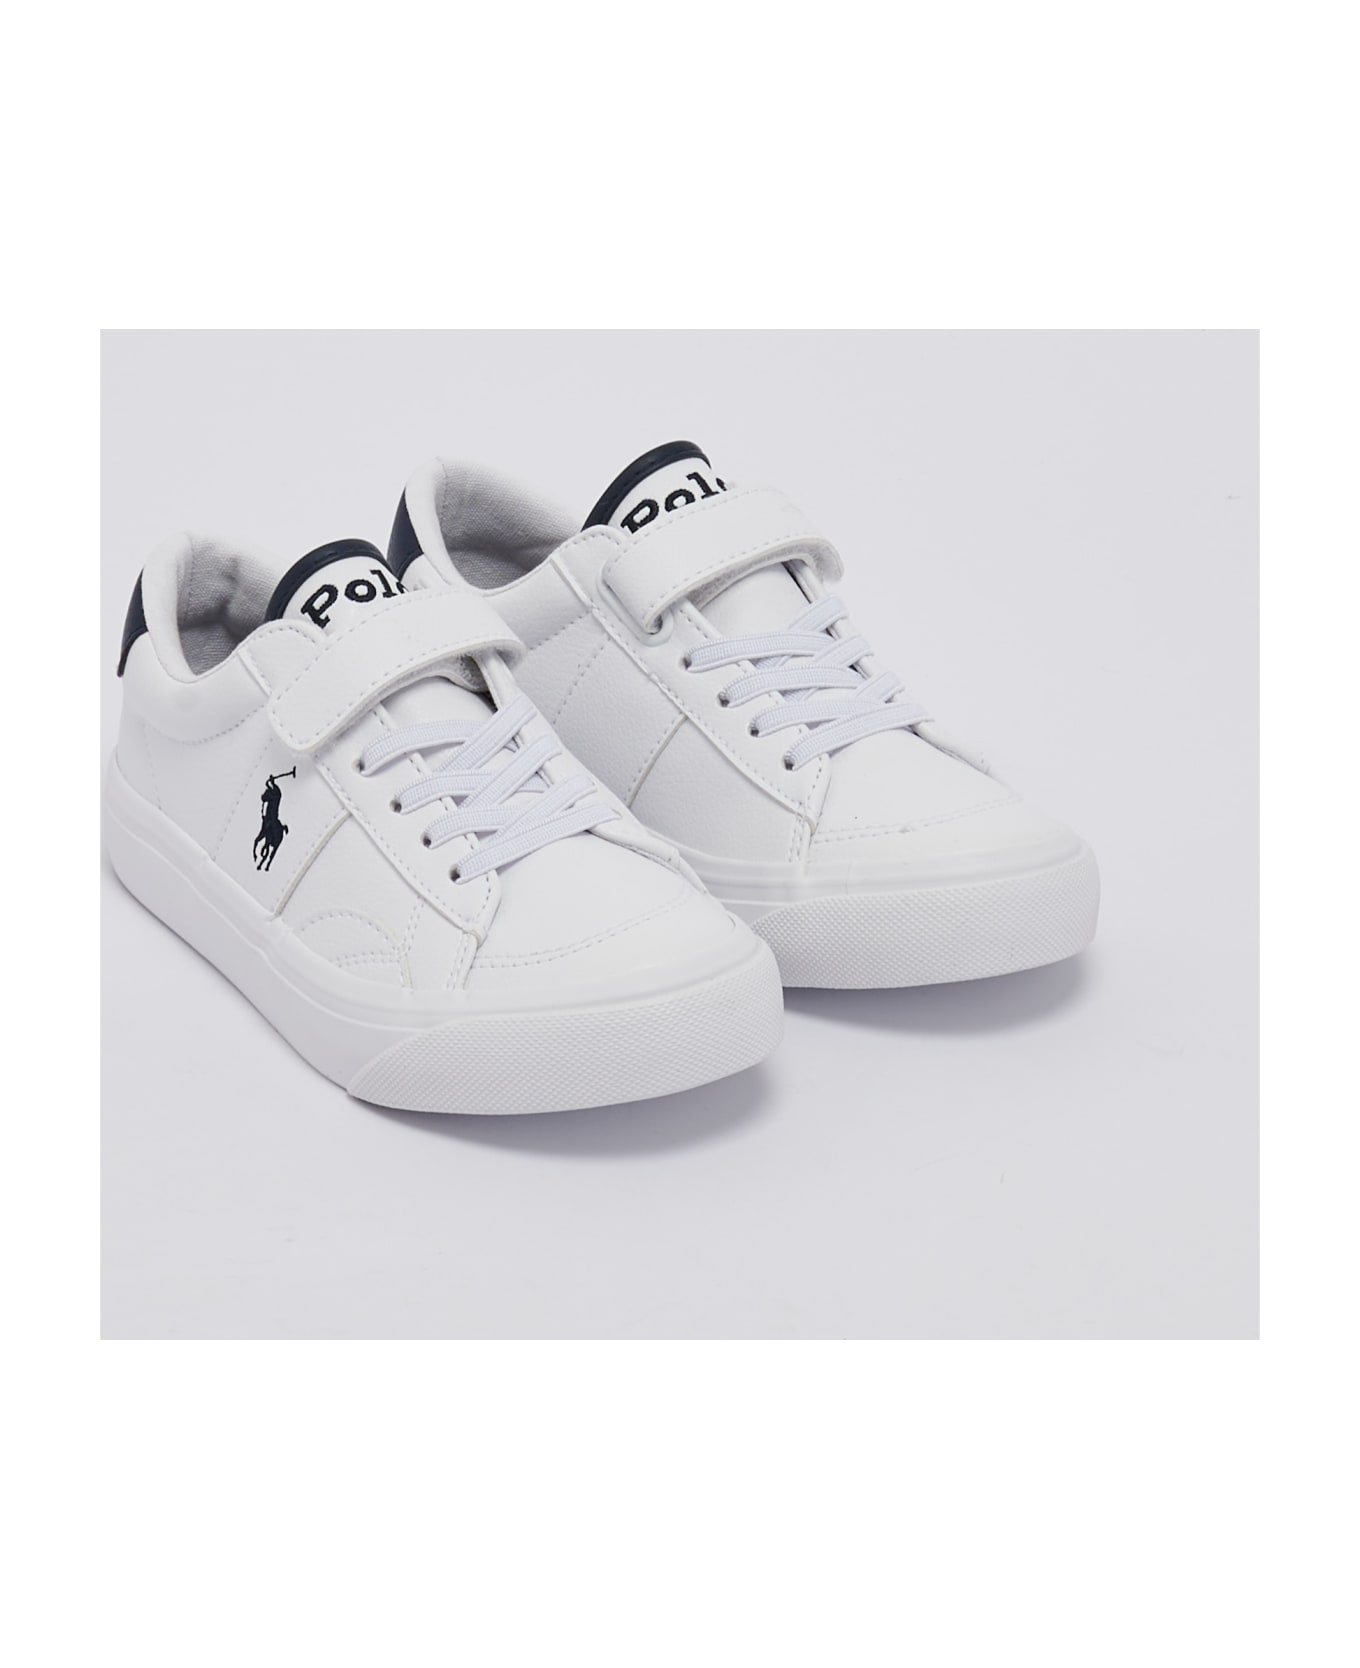 Polo Ralph Lauren Ryley Sneakers Sneaker - BIANCO